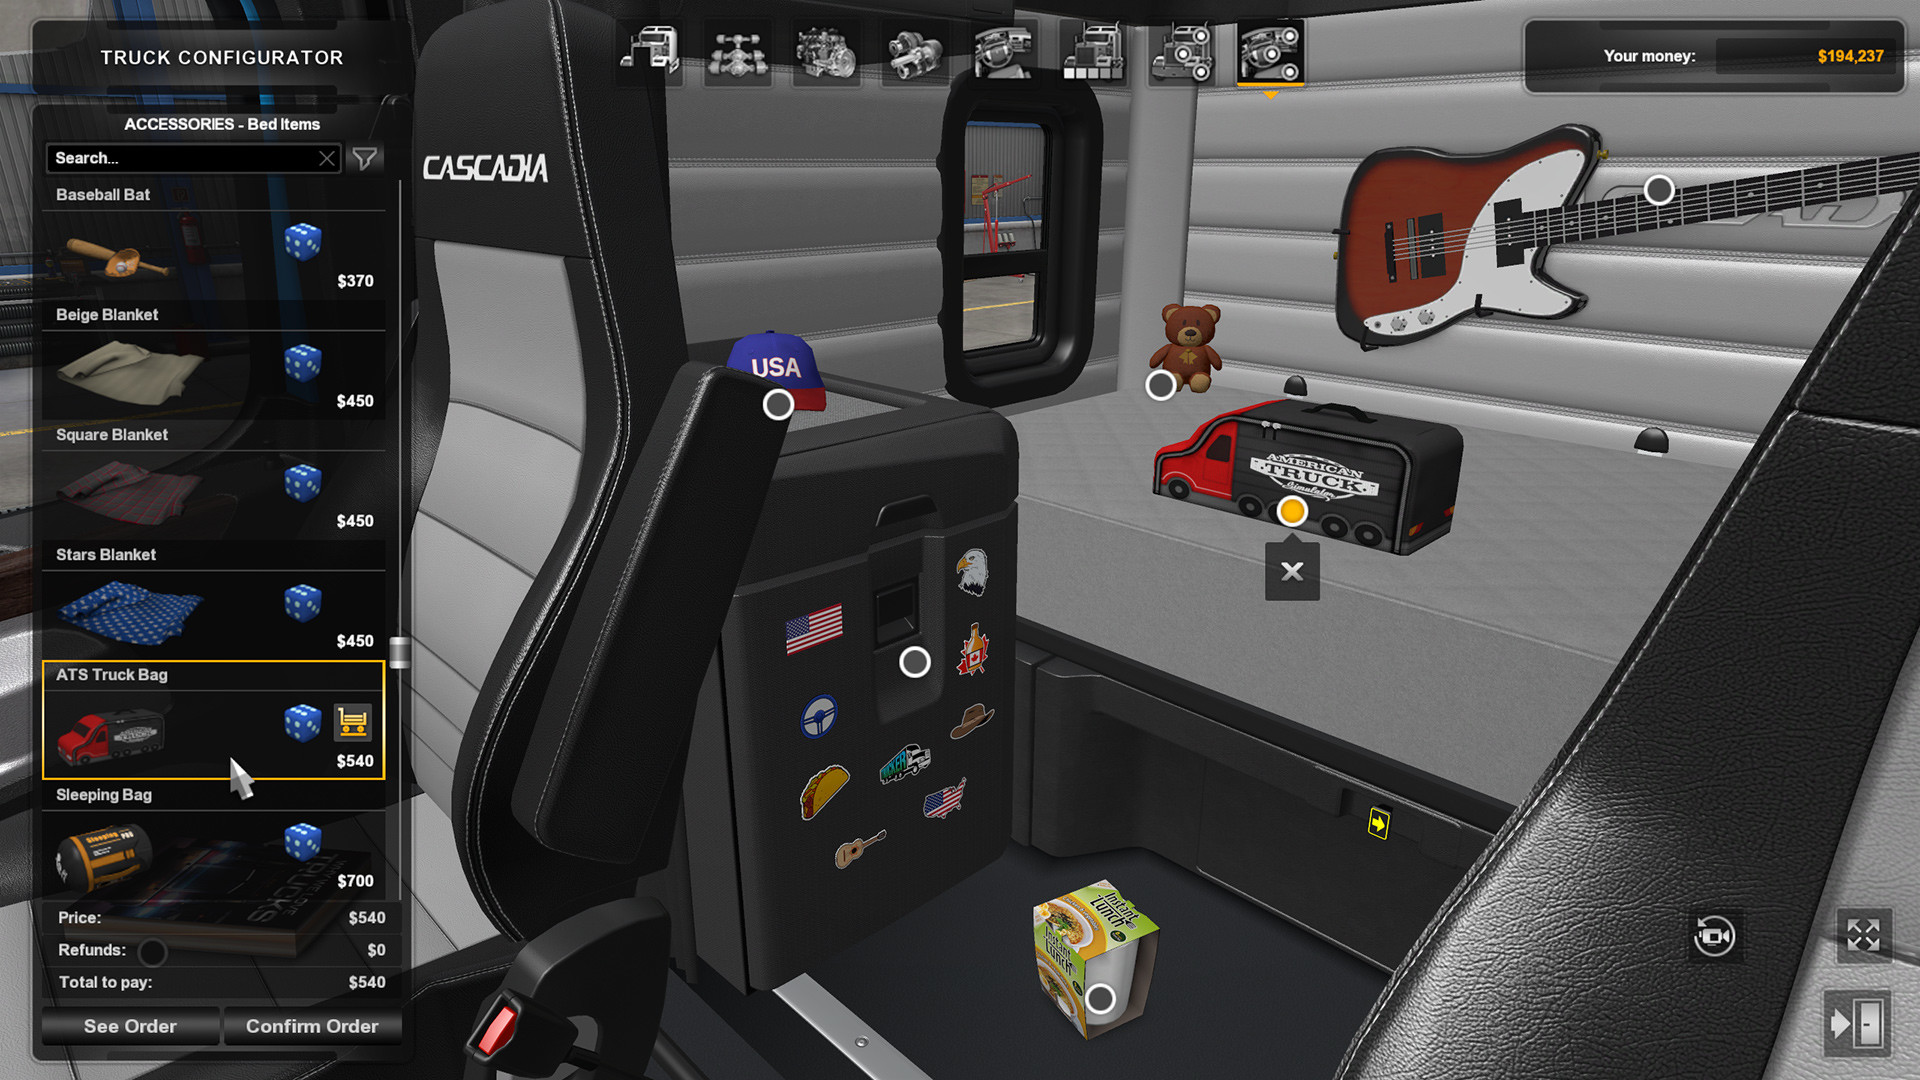 Kilimanjaro Dag landsby American Truck Simulator - Cabin Accessories on Steam